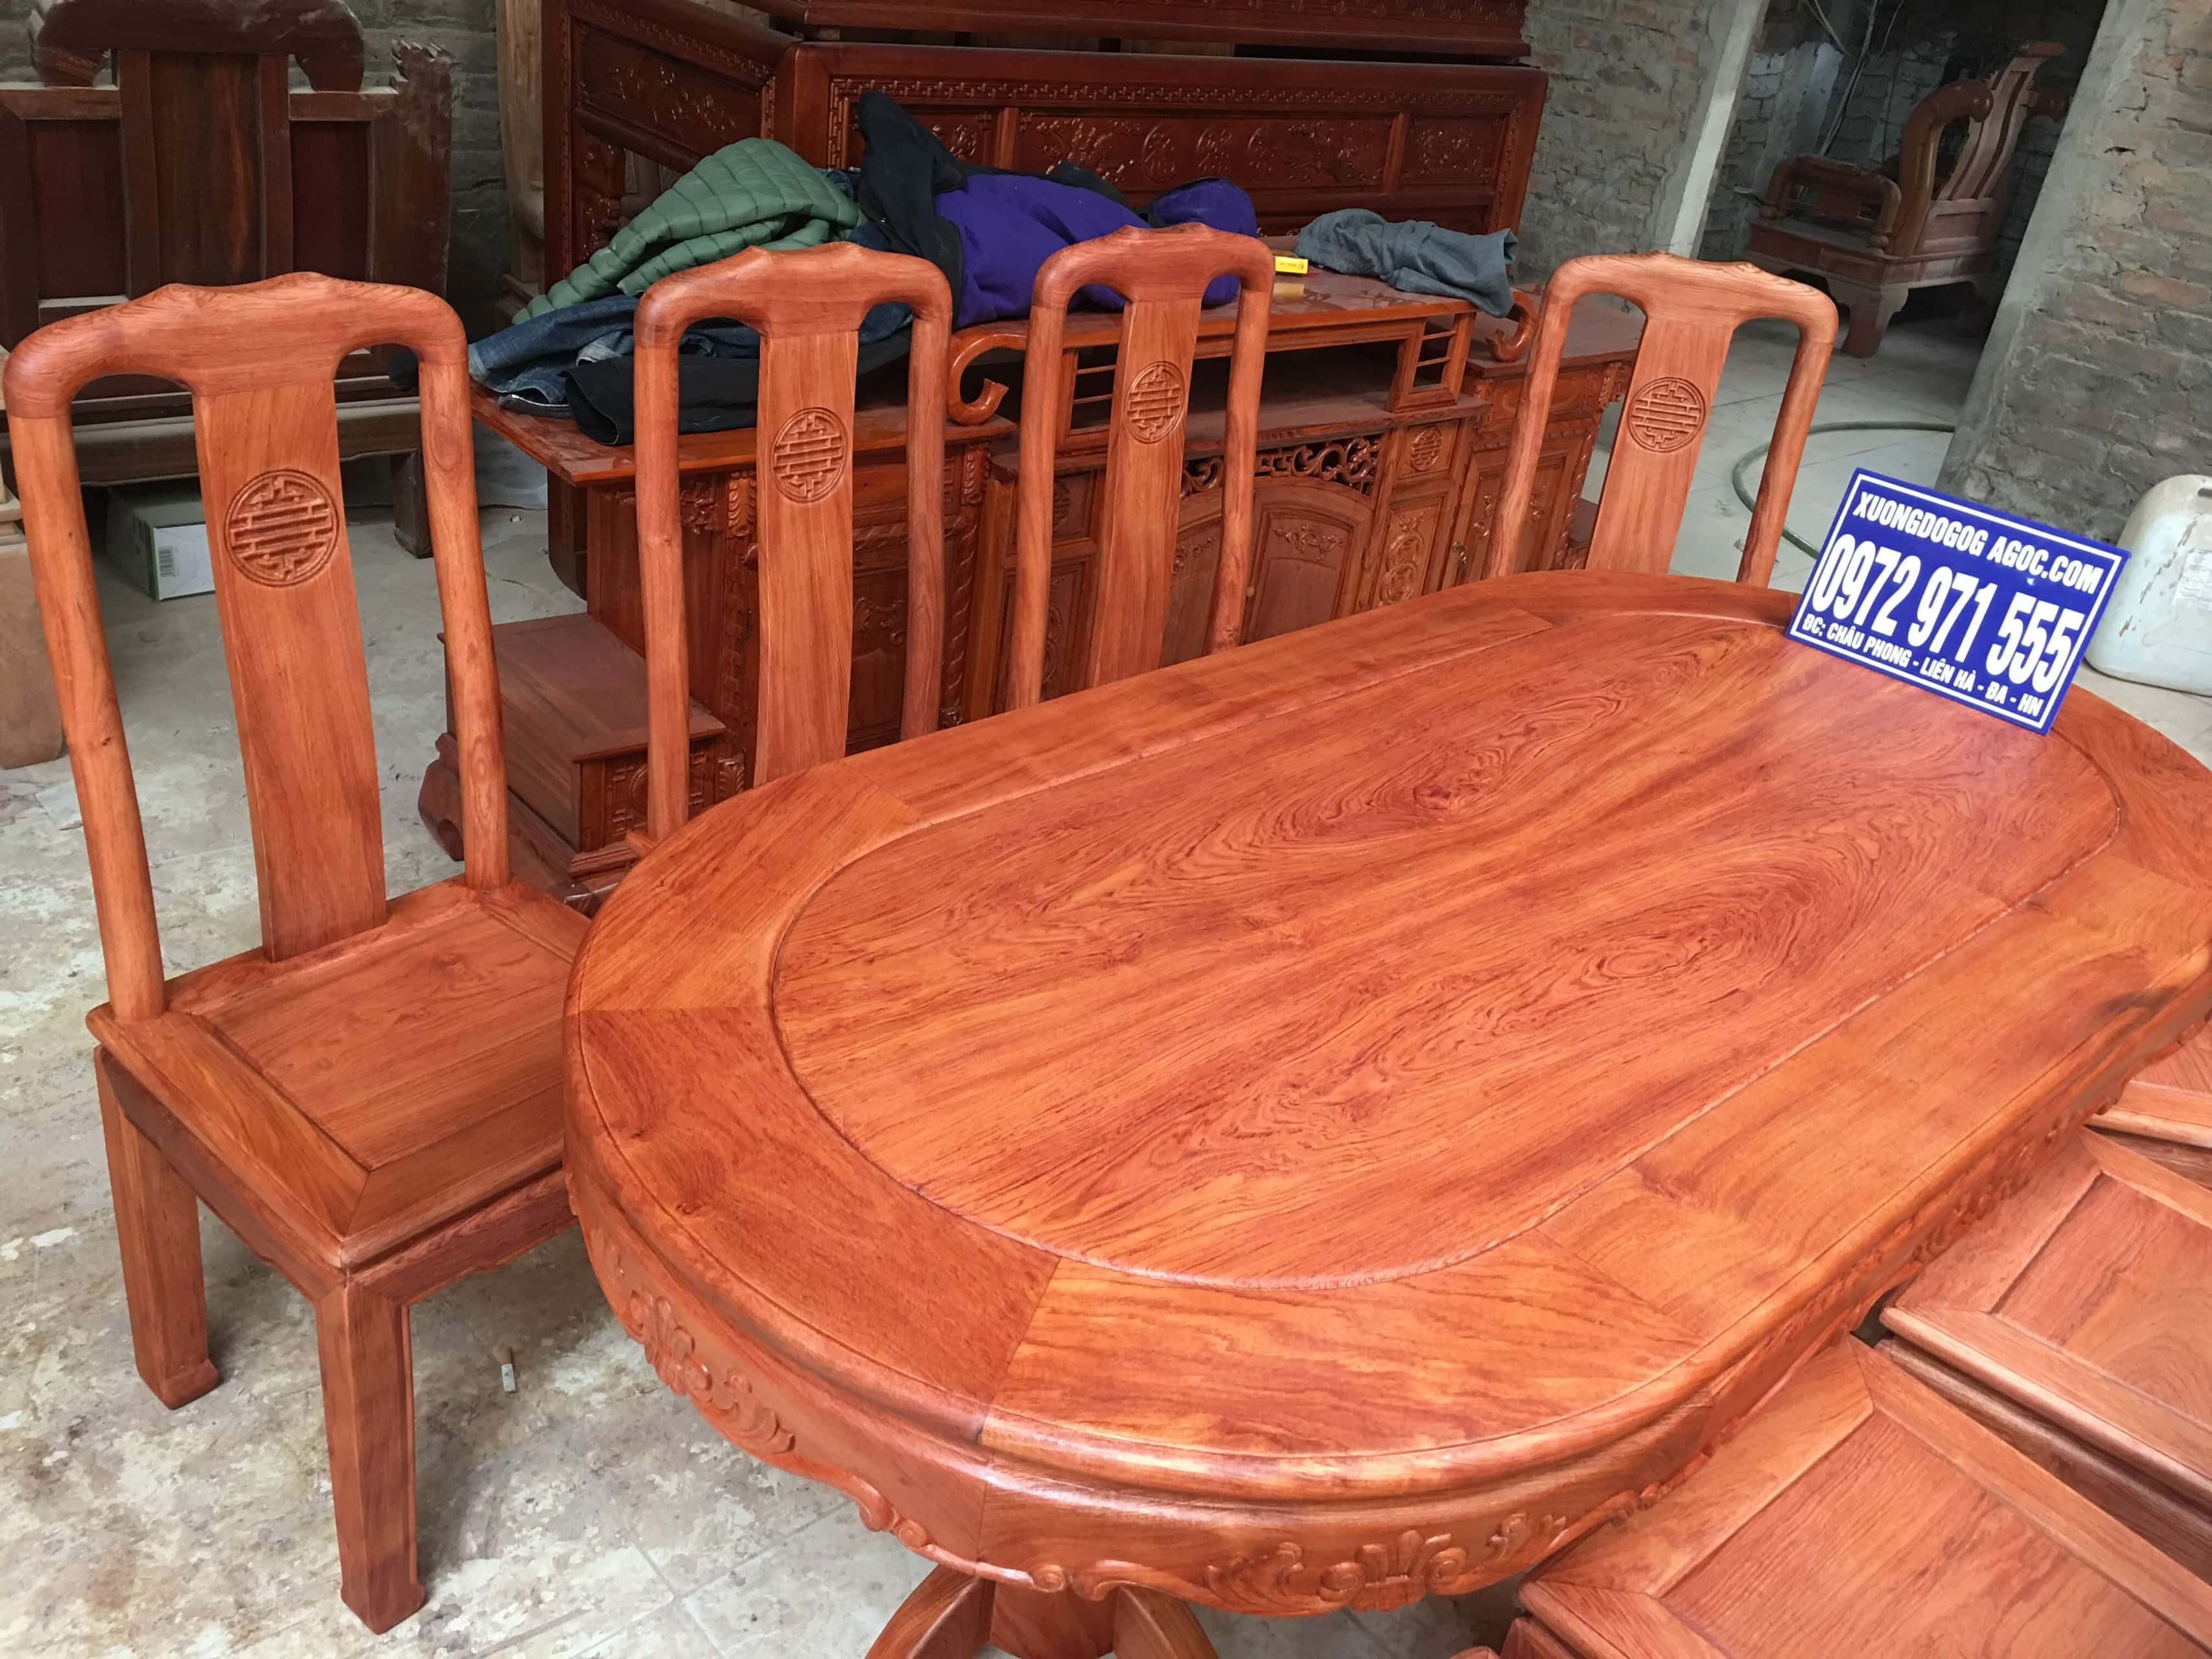 Cùng khám phá bộ bàn ăn gỗ hương đá bộ 8 ghế cực đẹp của xưởng đồ gỗ giá gốc! Với thiết kế tinh tế và độc đáo, bộ bàn ăn này chắc chắn sẽ thu hút mọi ánh nhìn. Hơn nữa, đừng lo về giá cả vì bàn ăn gỗ hương đá của chúng tôi luôn có giá rẻ và cạnh tranh trên thị trường.